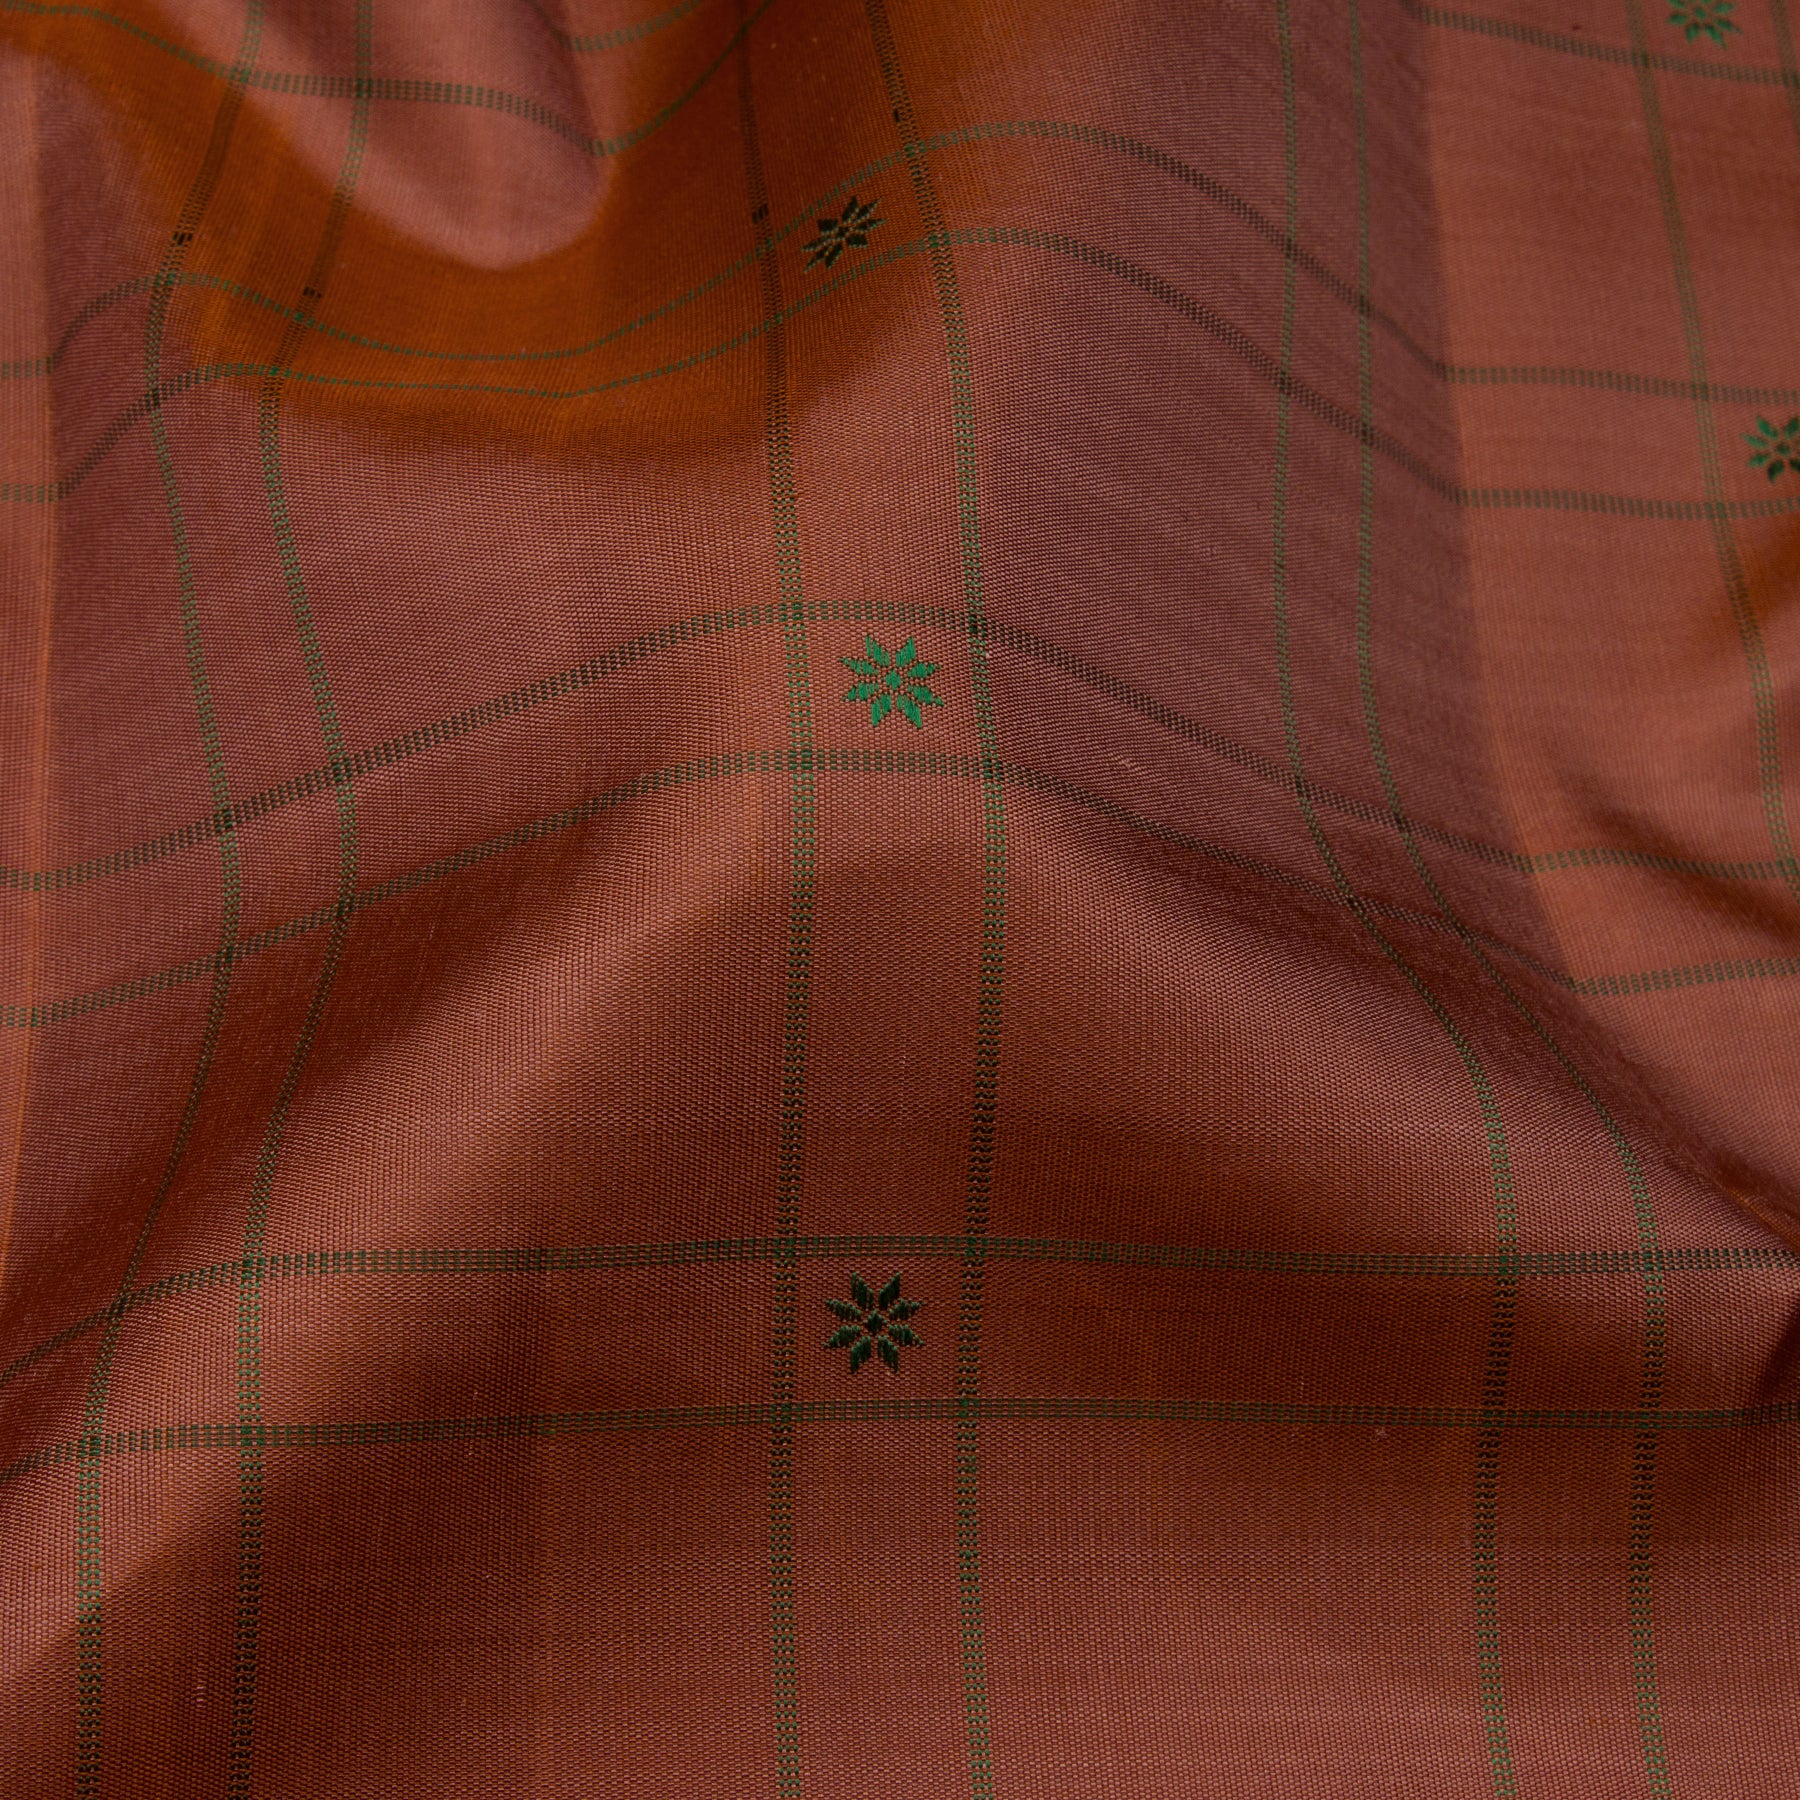 Kanakavalli Kanjivaram Silk Sari 23-595-HS001-13682 - Fabric View